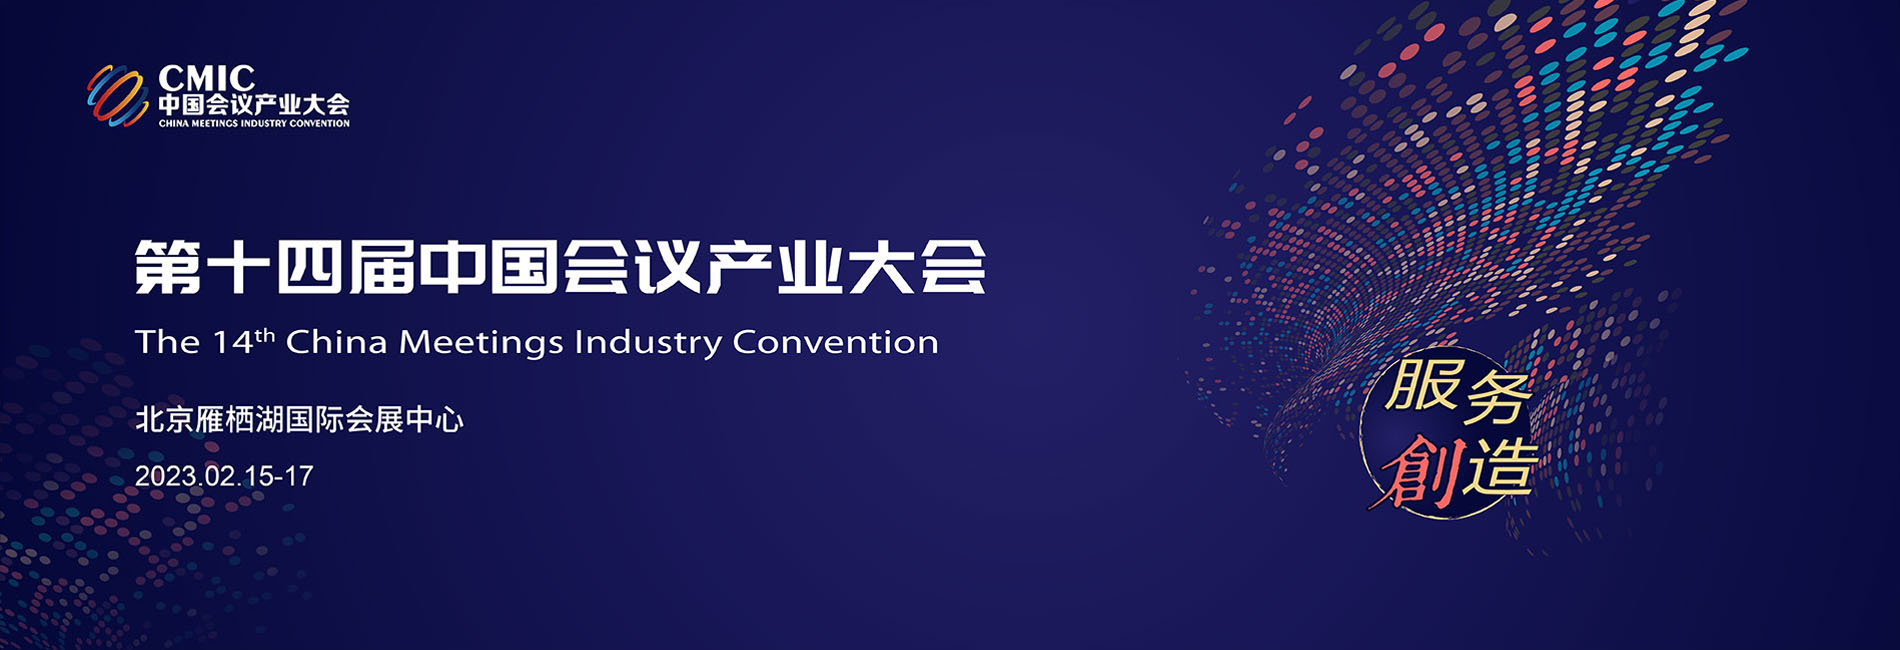 第十四届中国会议产业大会（CMIC）